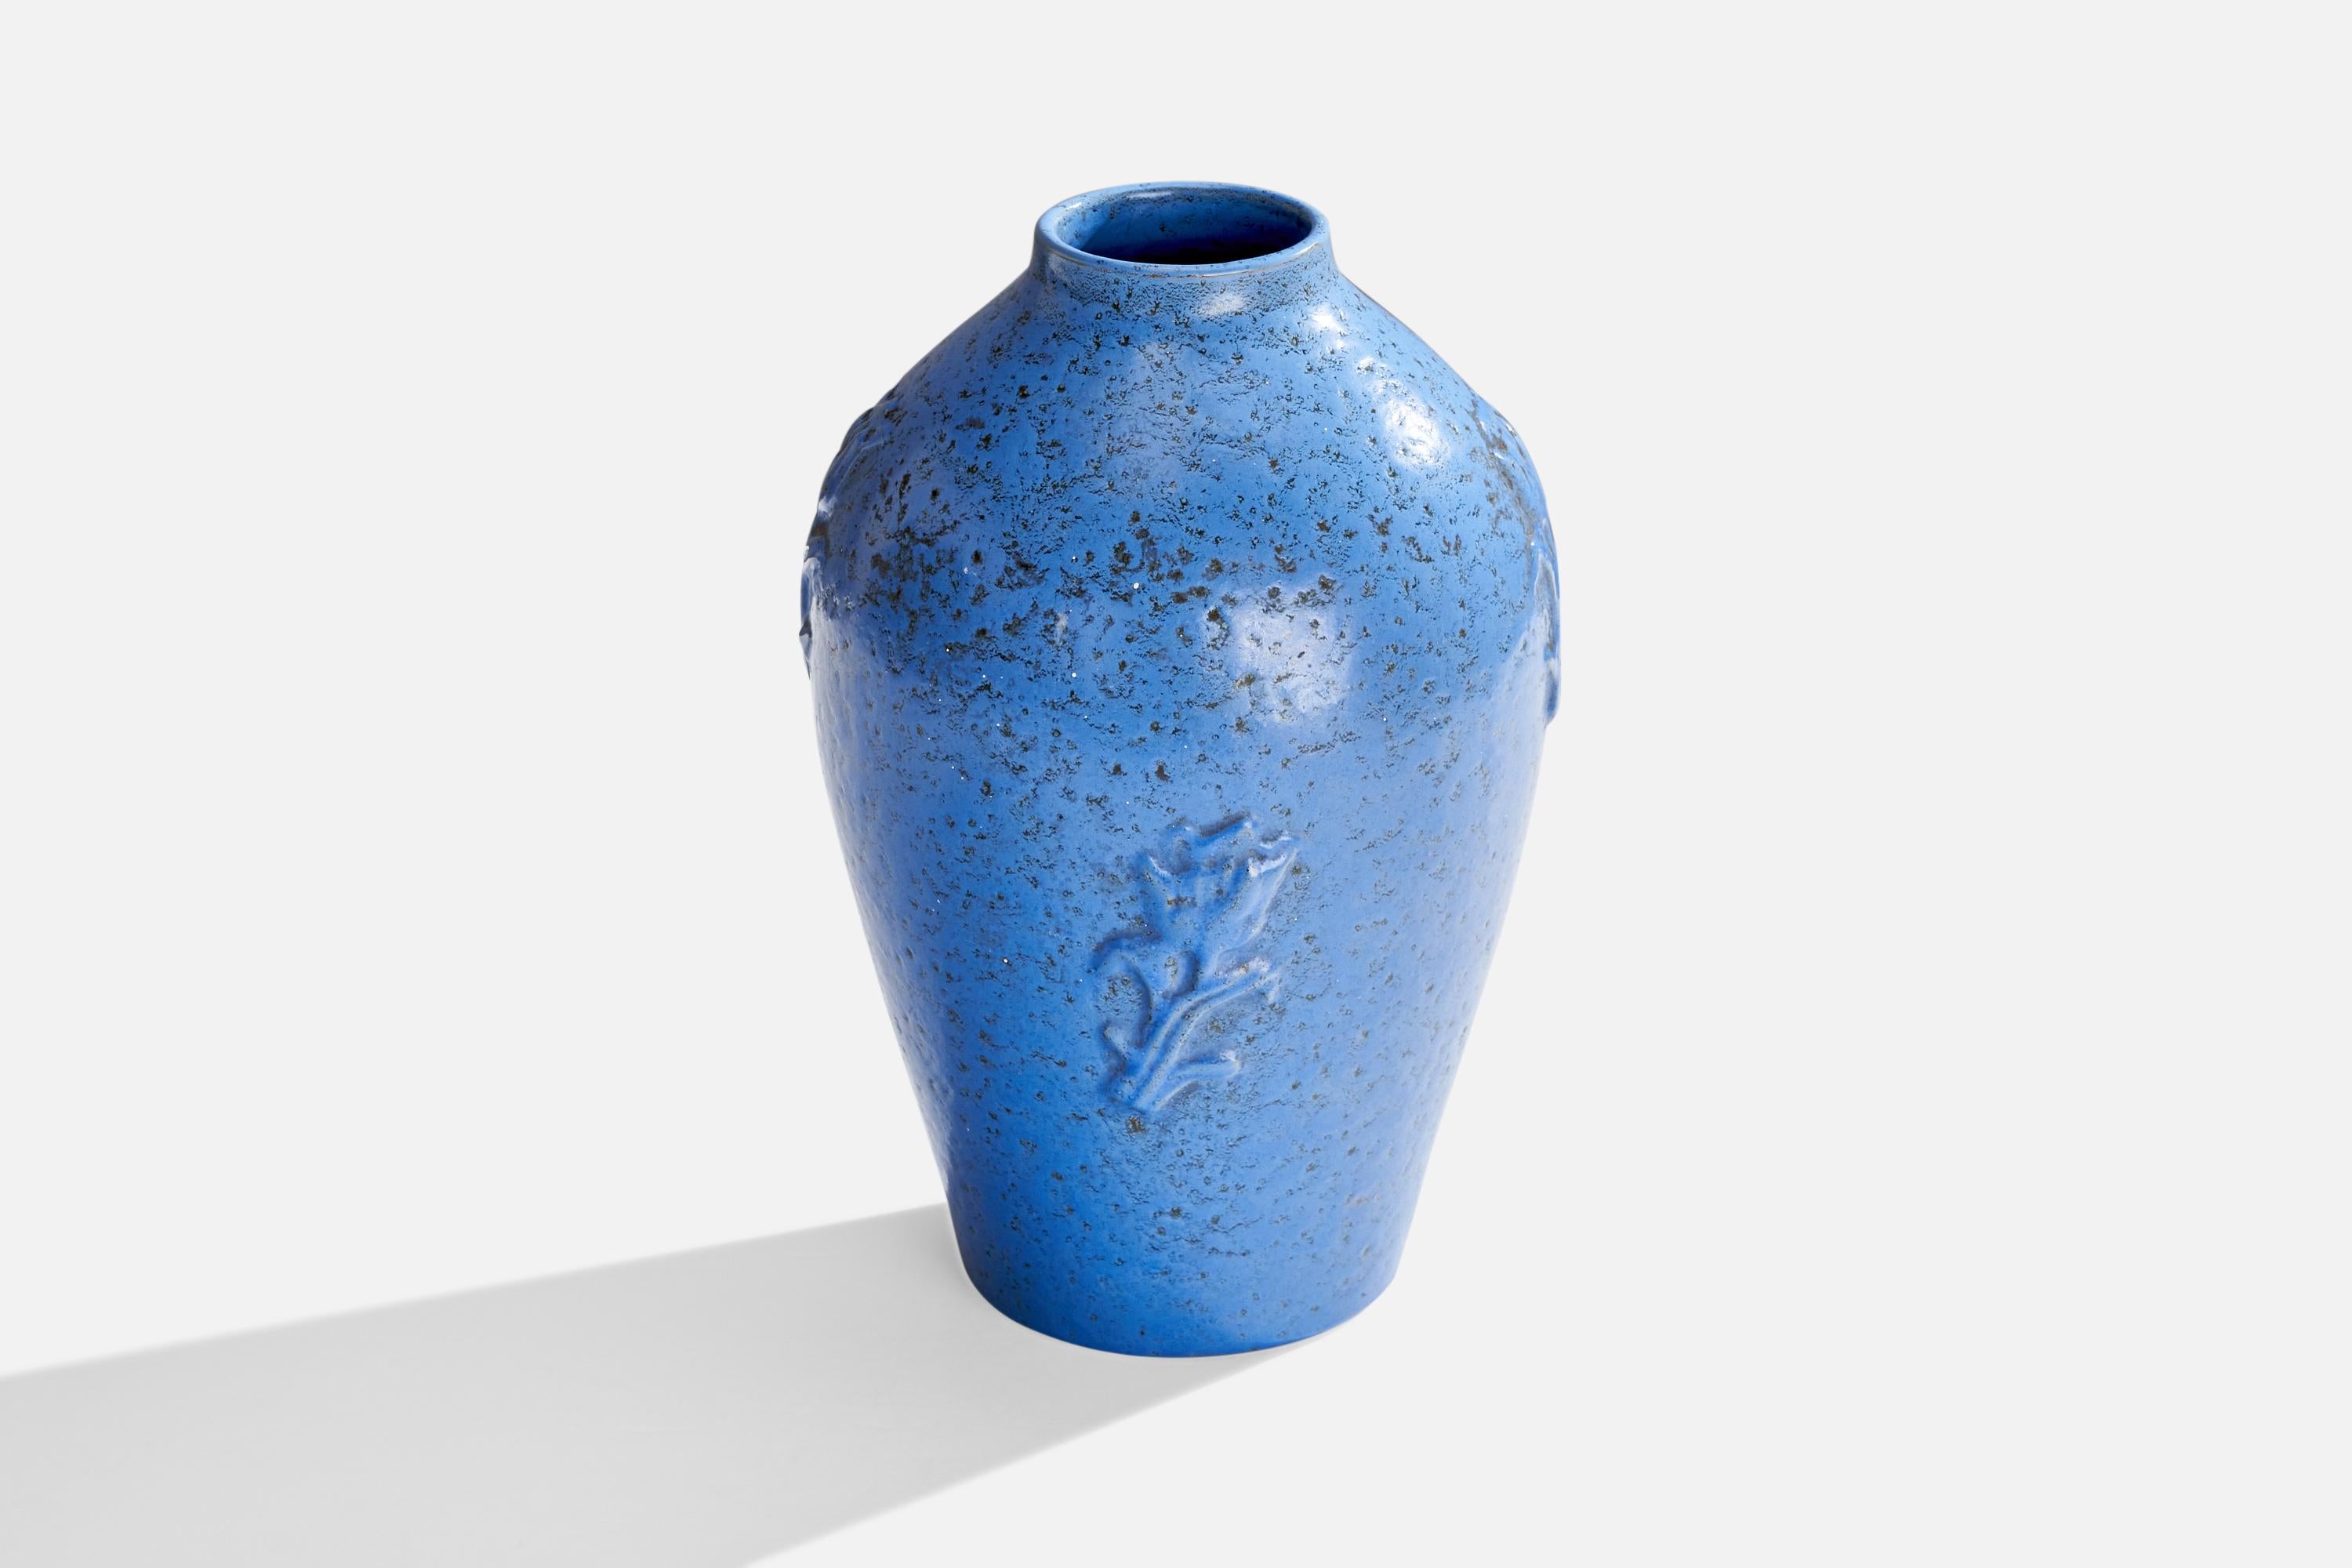 Vase aus blau glasierter Keramik, entworfen von Jerk Werkmäster und hergestellt von Nittsjö, Schweden, ca. 1930er Jahre.